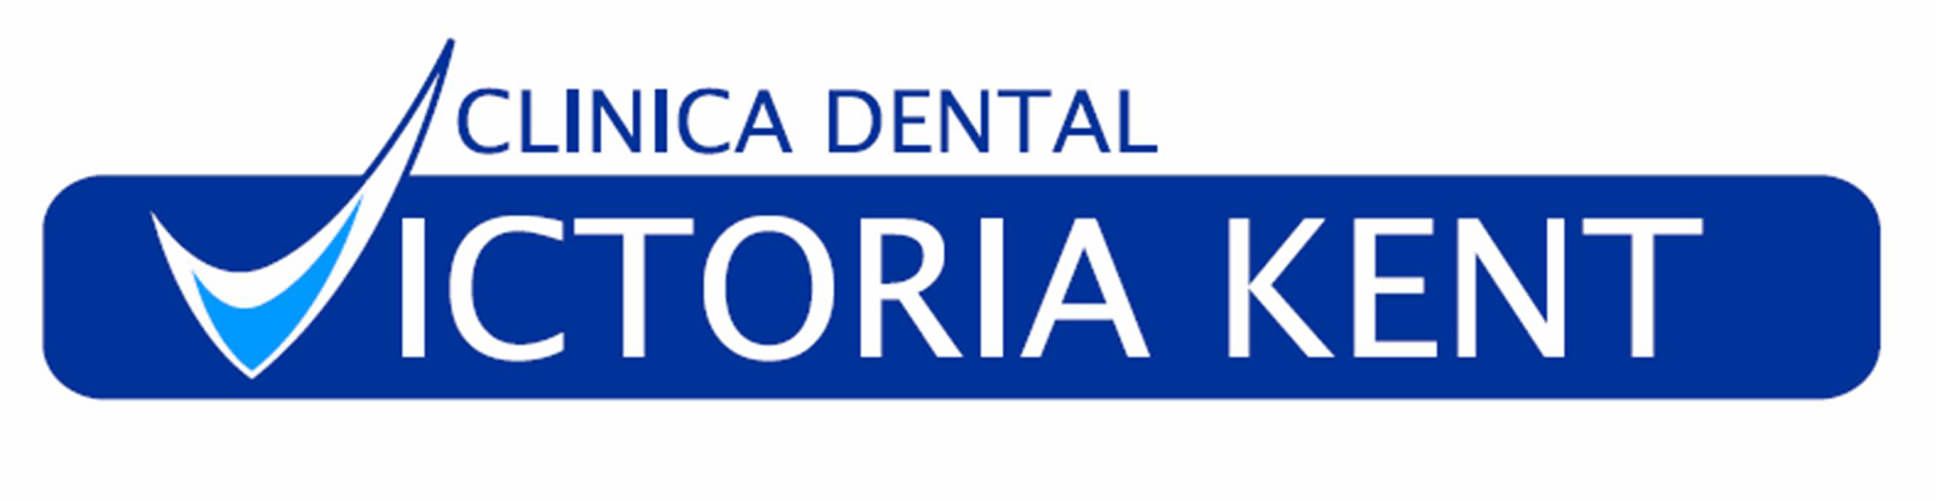 Logotipo antiguo Clínica Dental Victoría Kent